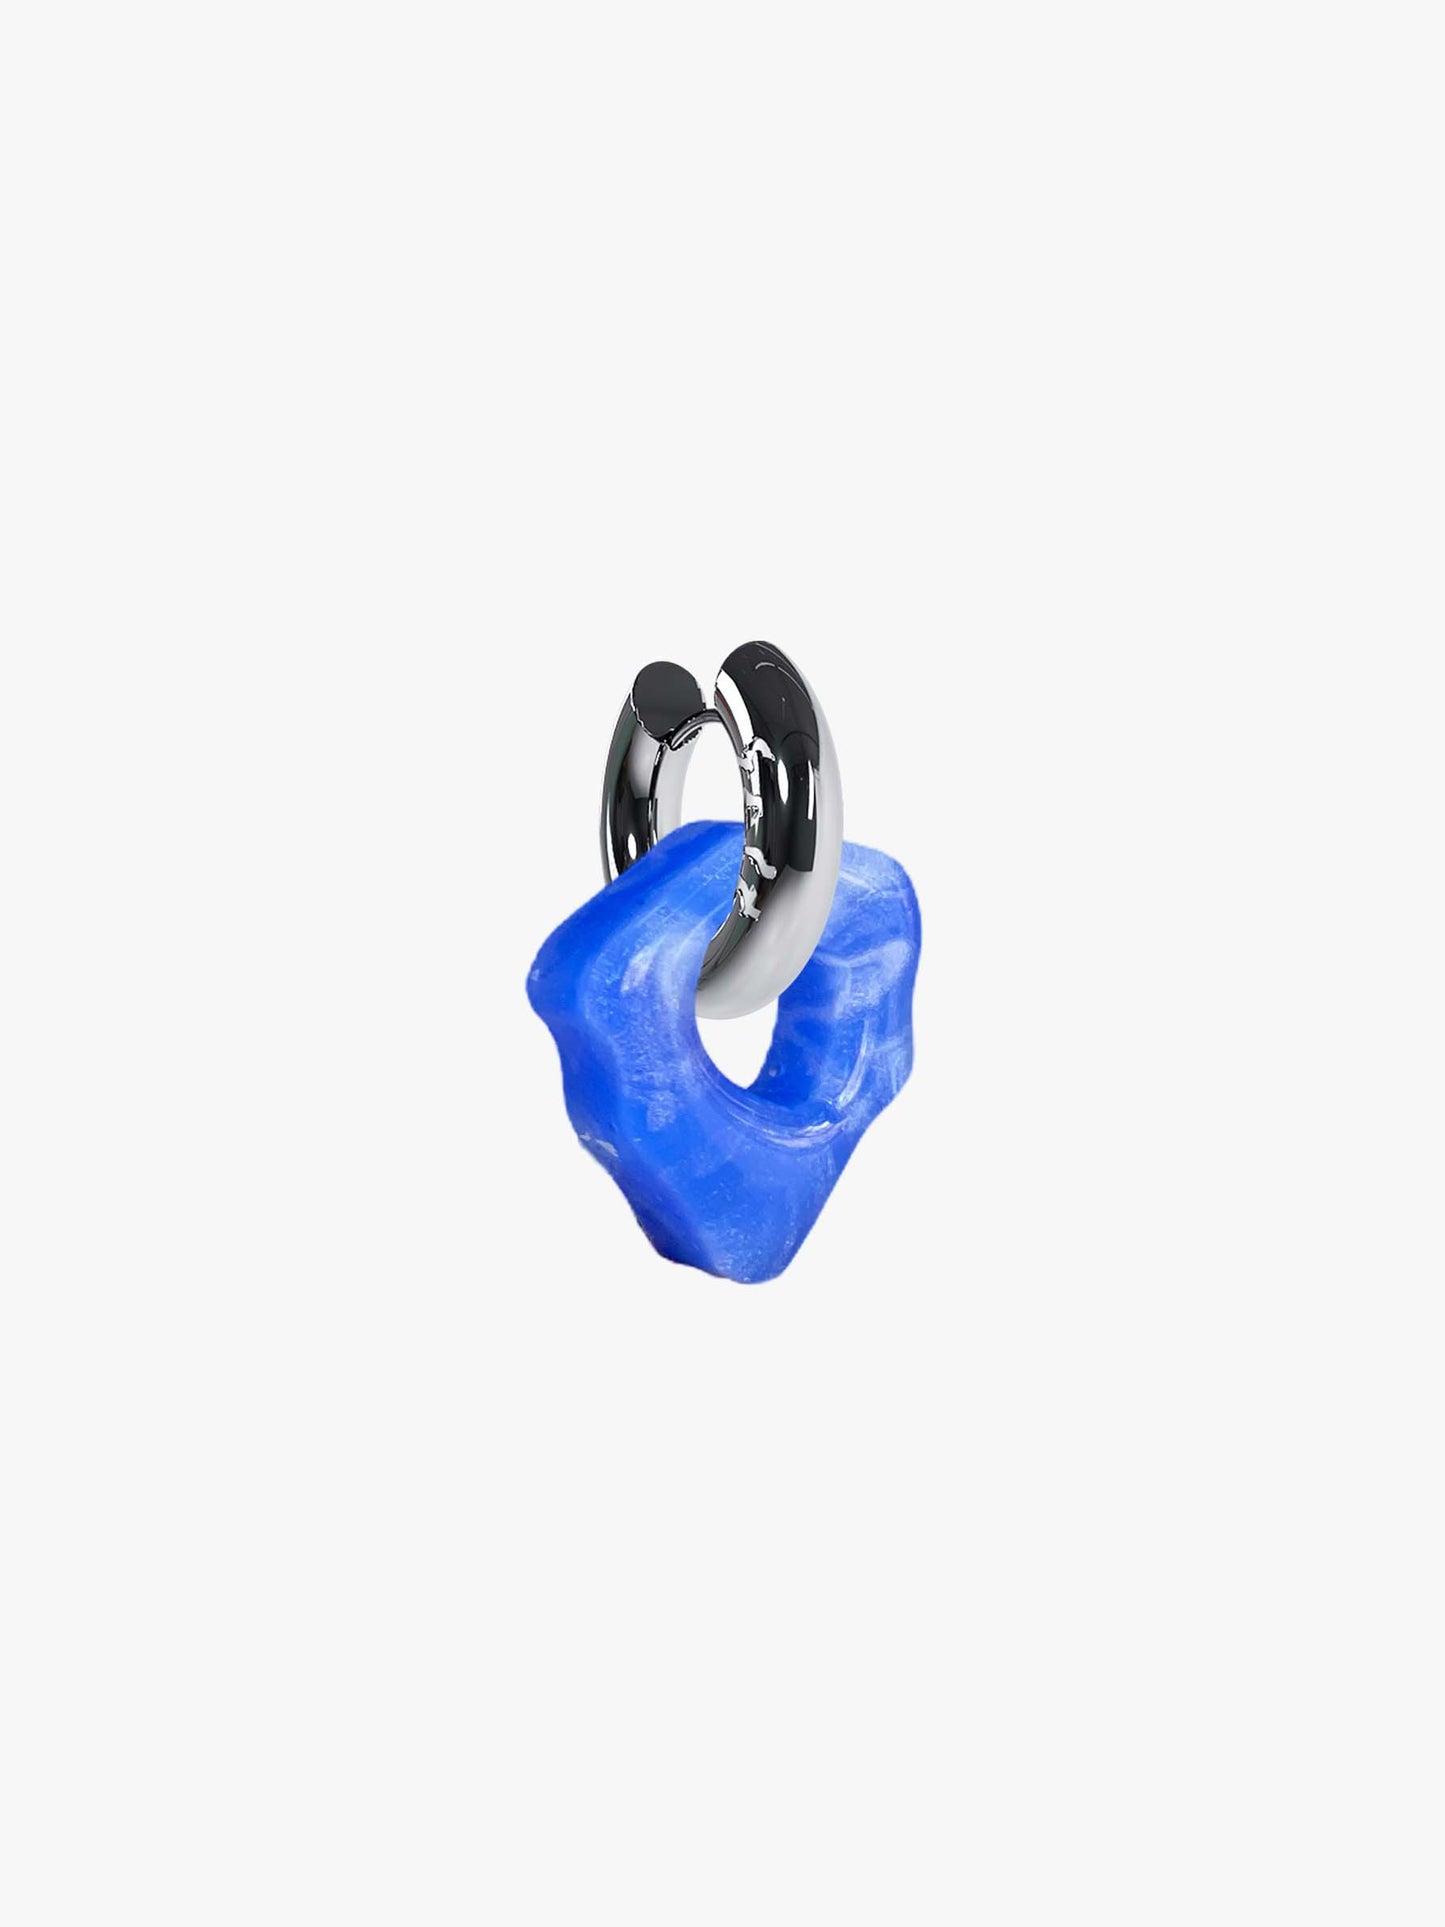 Ami Ora ocean blue silver earring (pair)